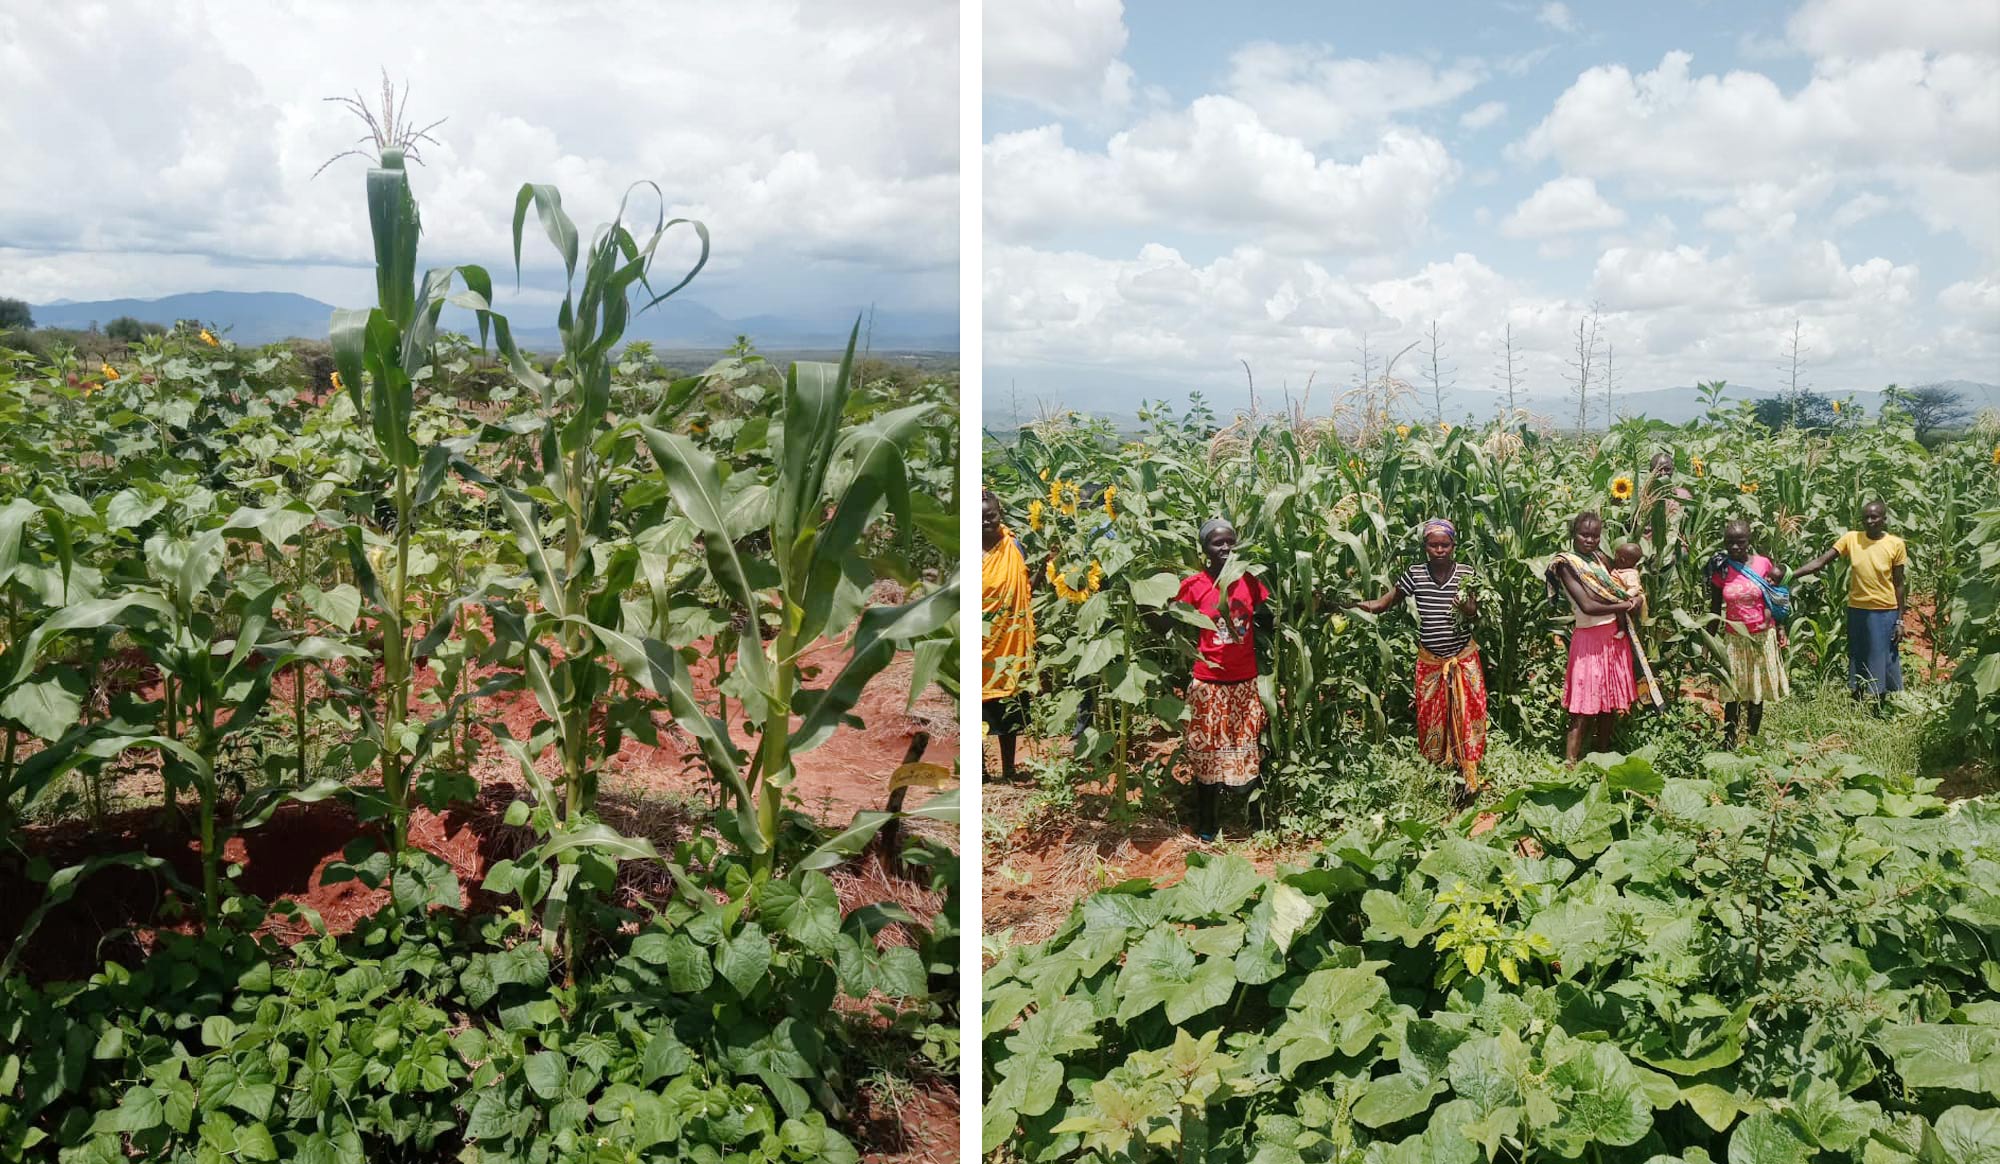 Två bilder, den första en närbild av majs och andra plantor i ett grönsaksland. Den andra visar 6 personer som står i en grönsaksodling omgivna av gröna frodiga plantor. En av kvinnorna på bilden bär ett barn.  